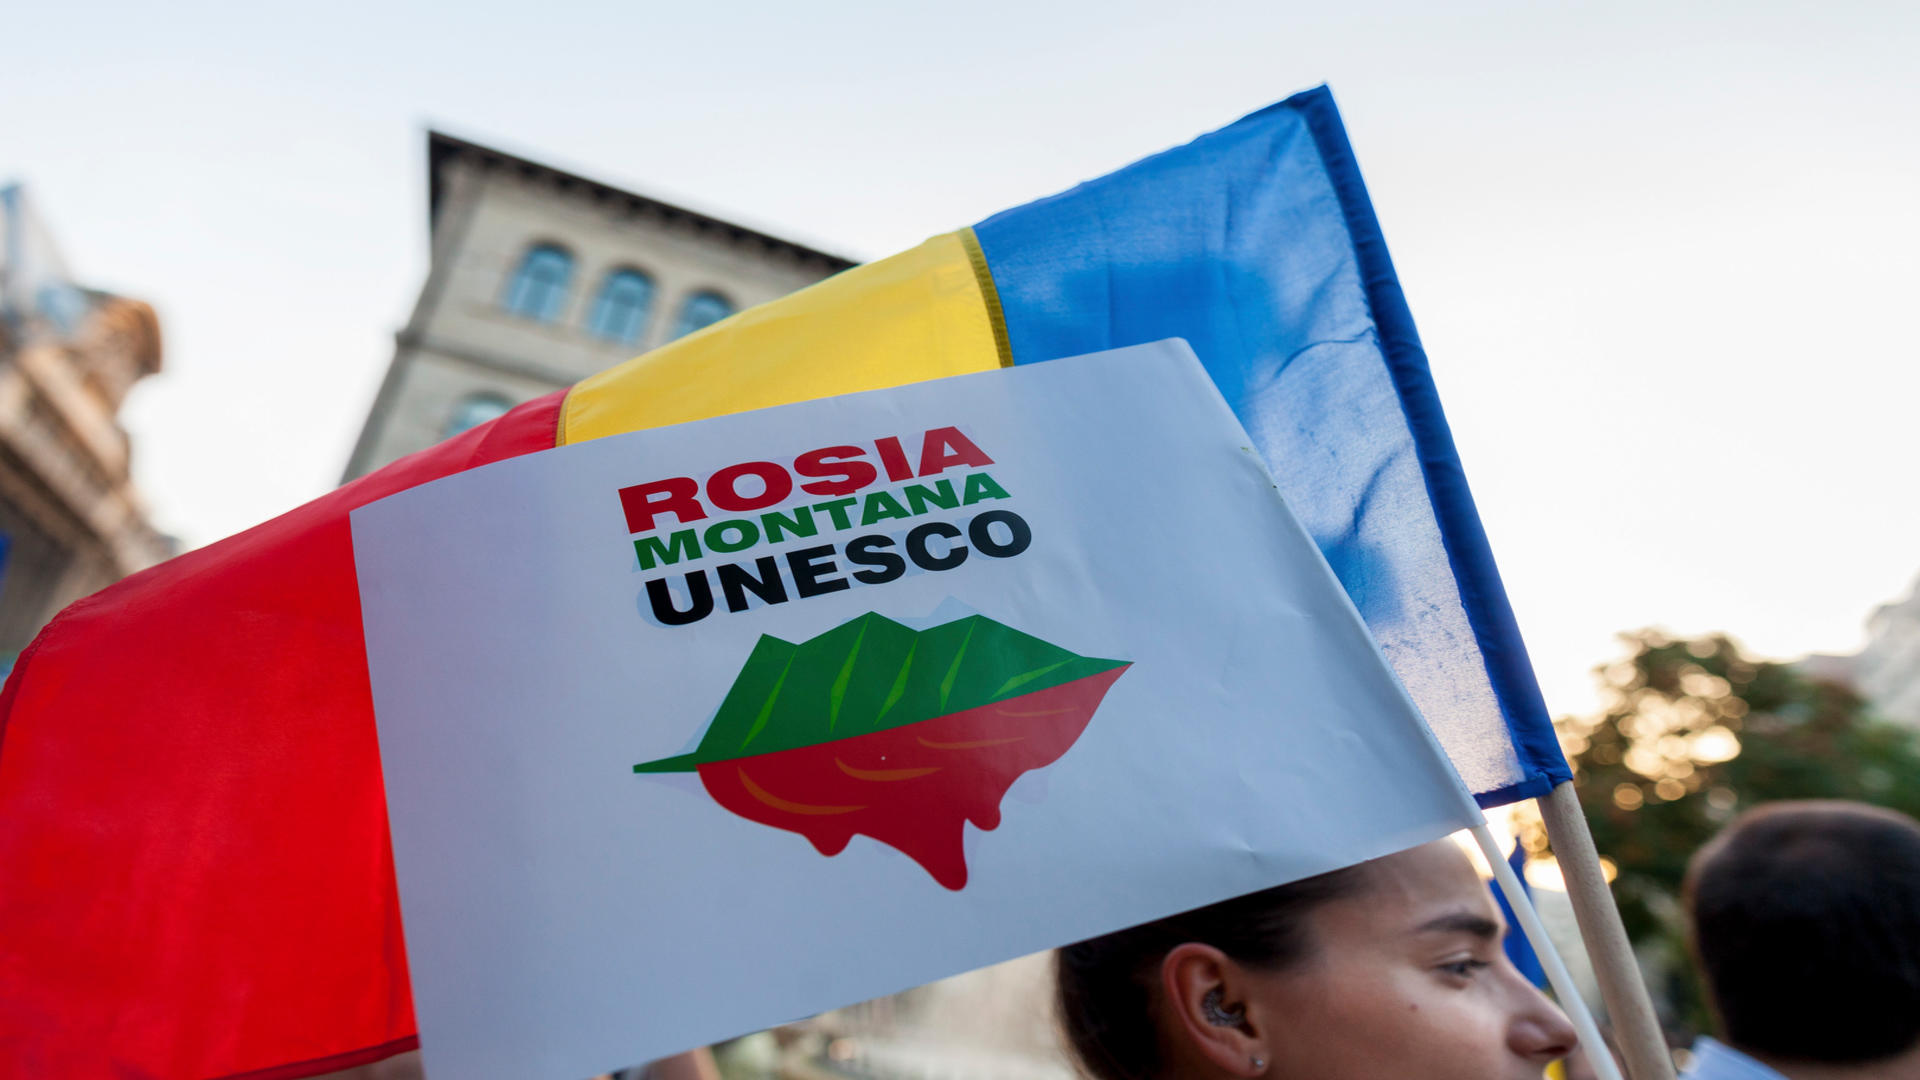 Statul român ar putea fi silit să plătească despăgubiri record (Inquam Photos)